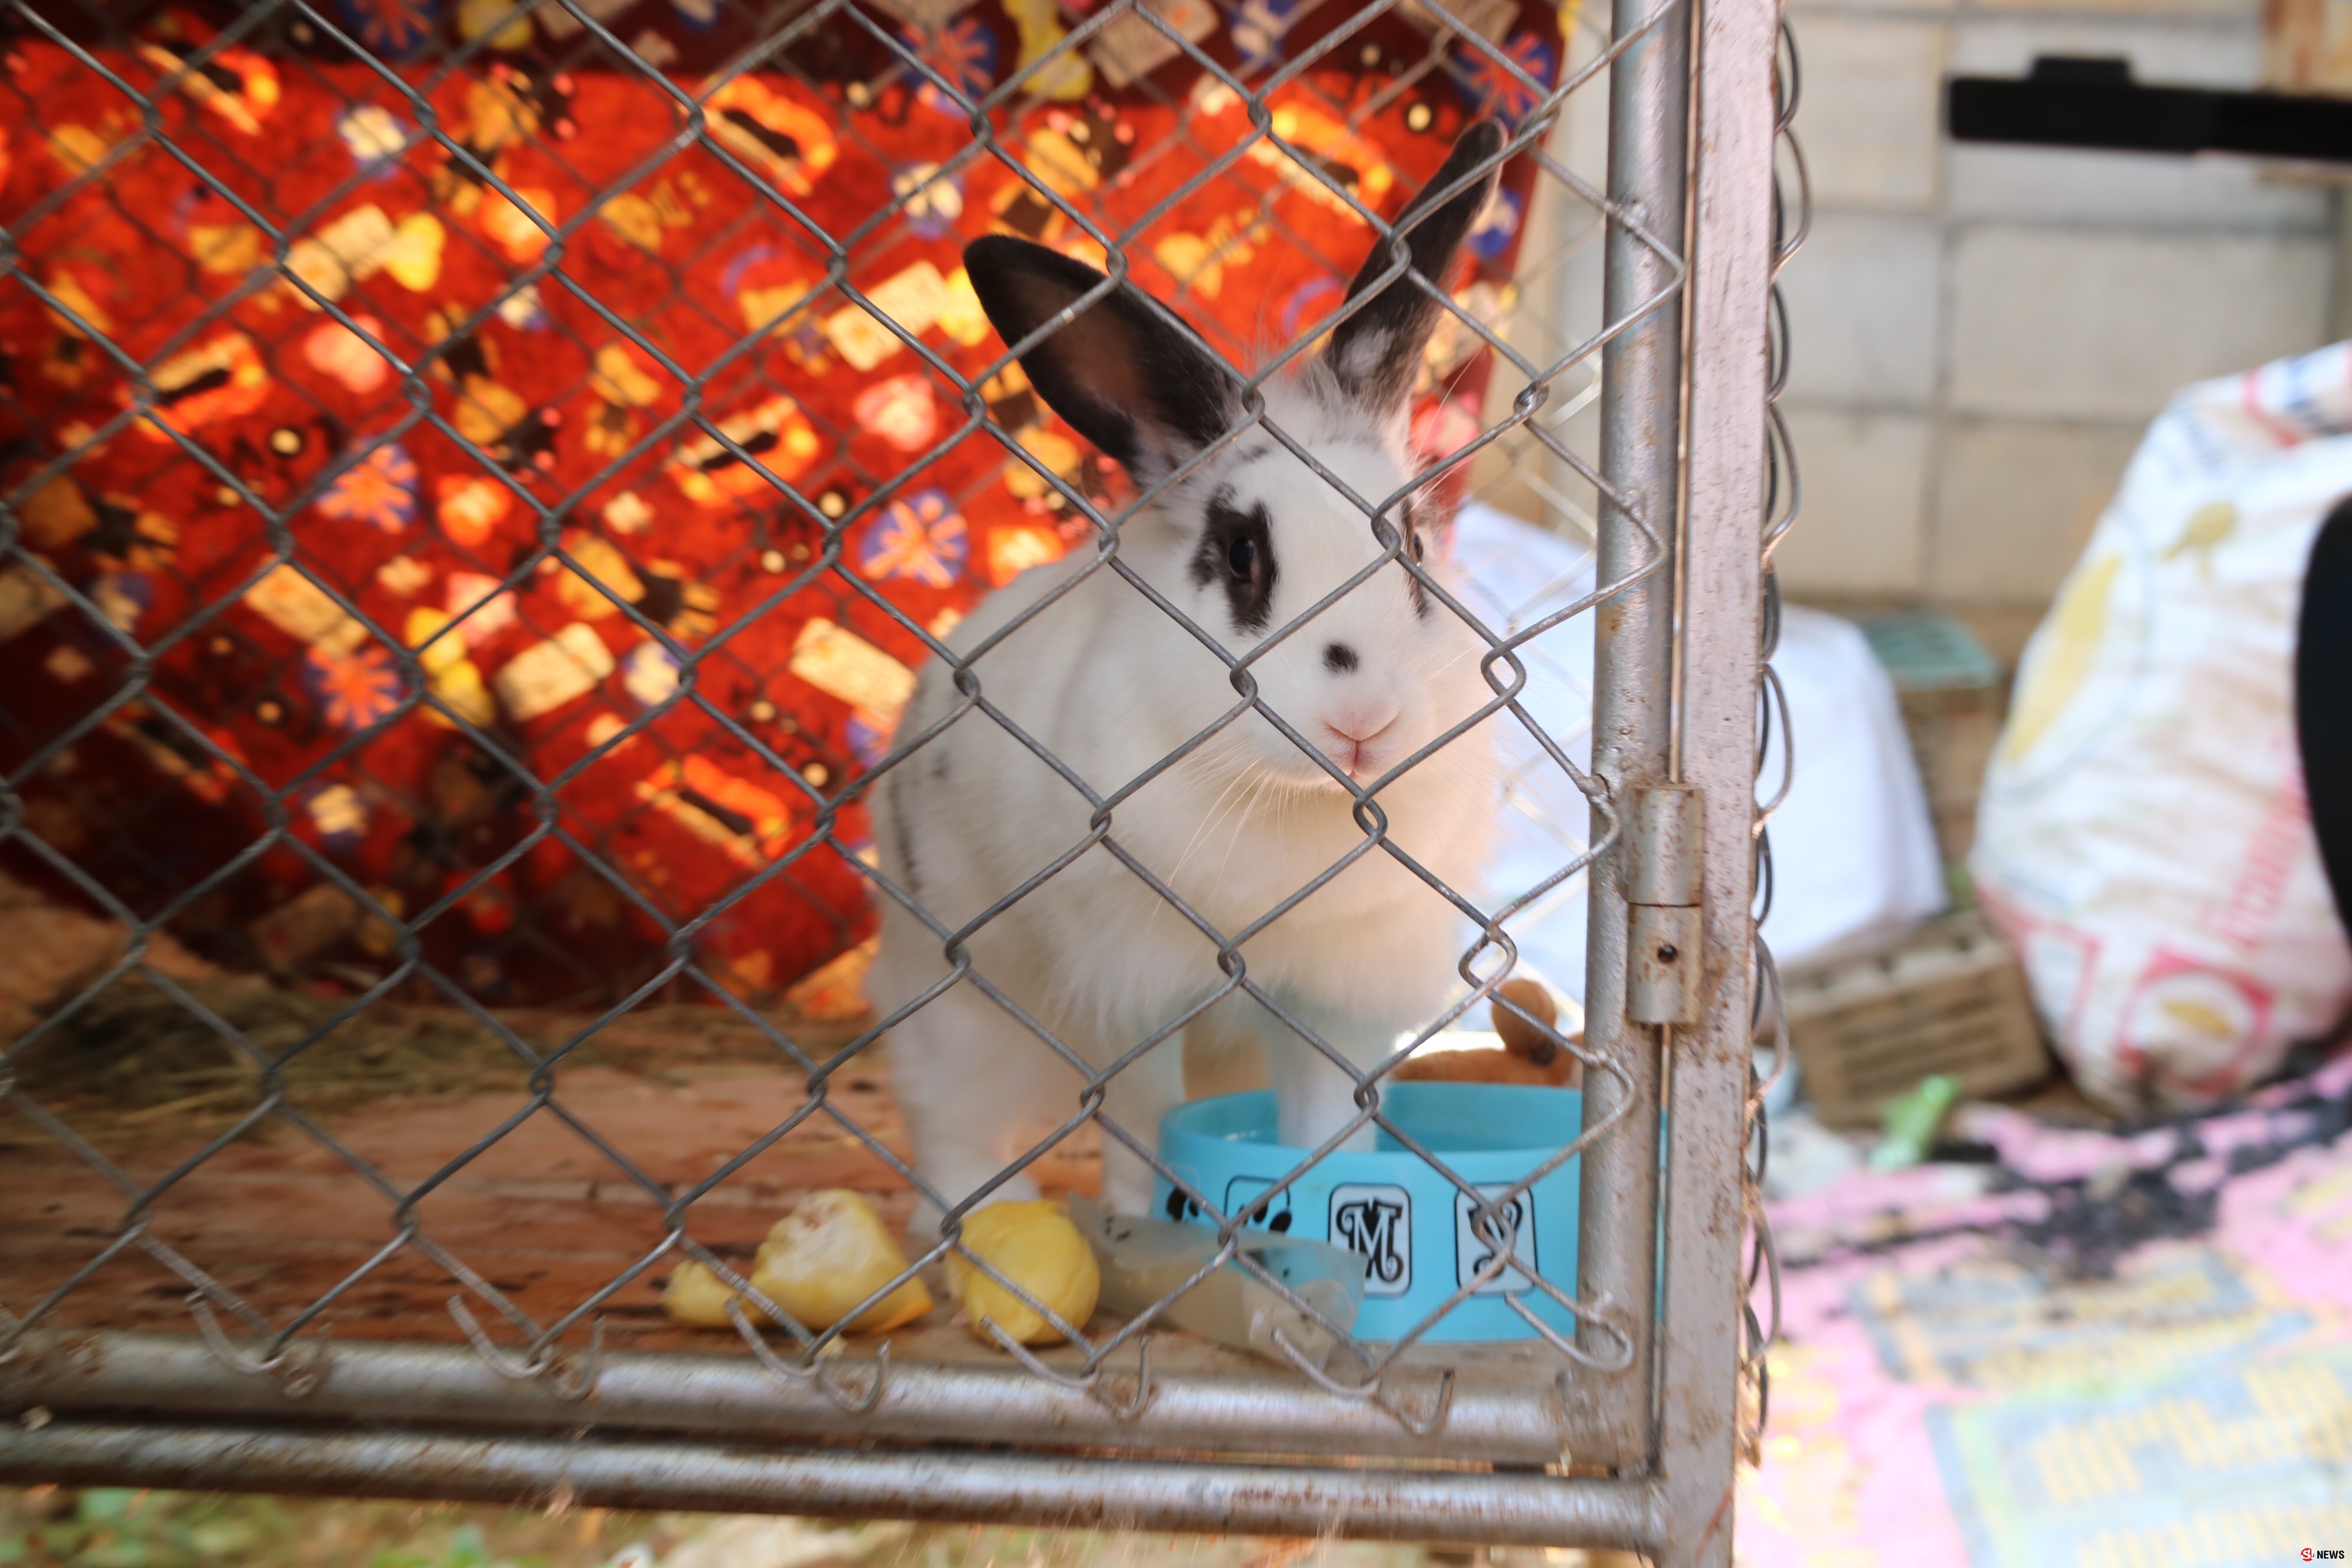 สุดแปลก! กระต่ายเมืองลับแล ชอบกินทุเรียนหลงลับแล ข้าวแคบ เจ้าของบอก ขอกินทุกวัน